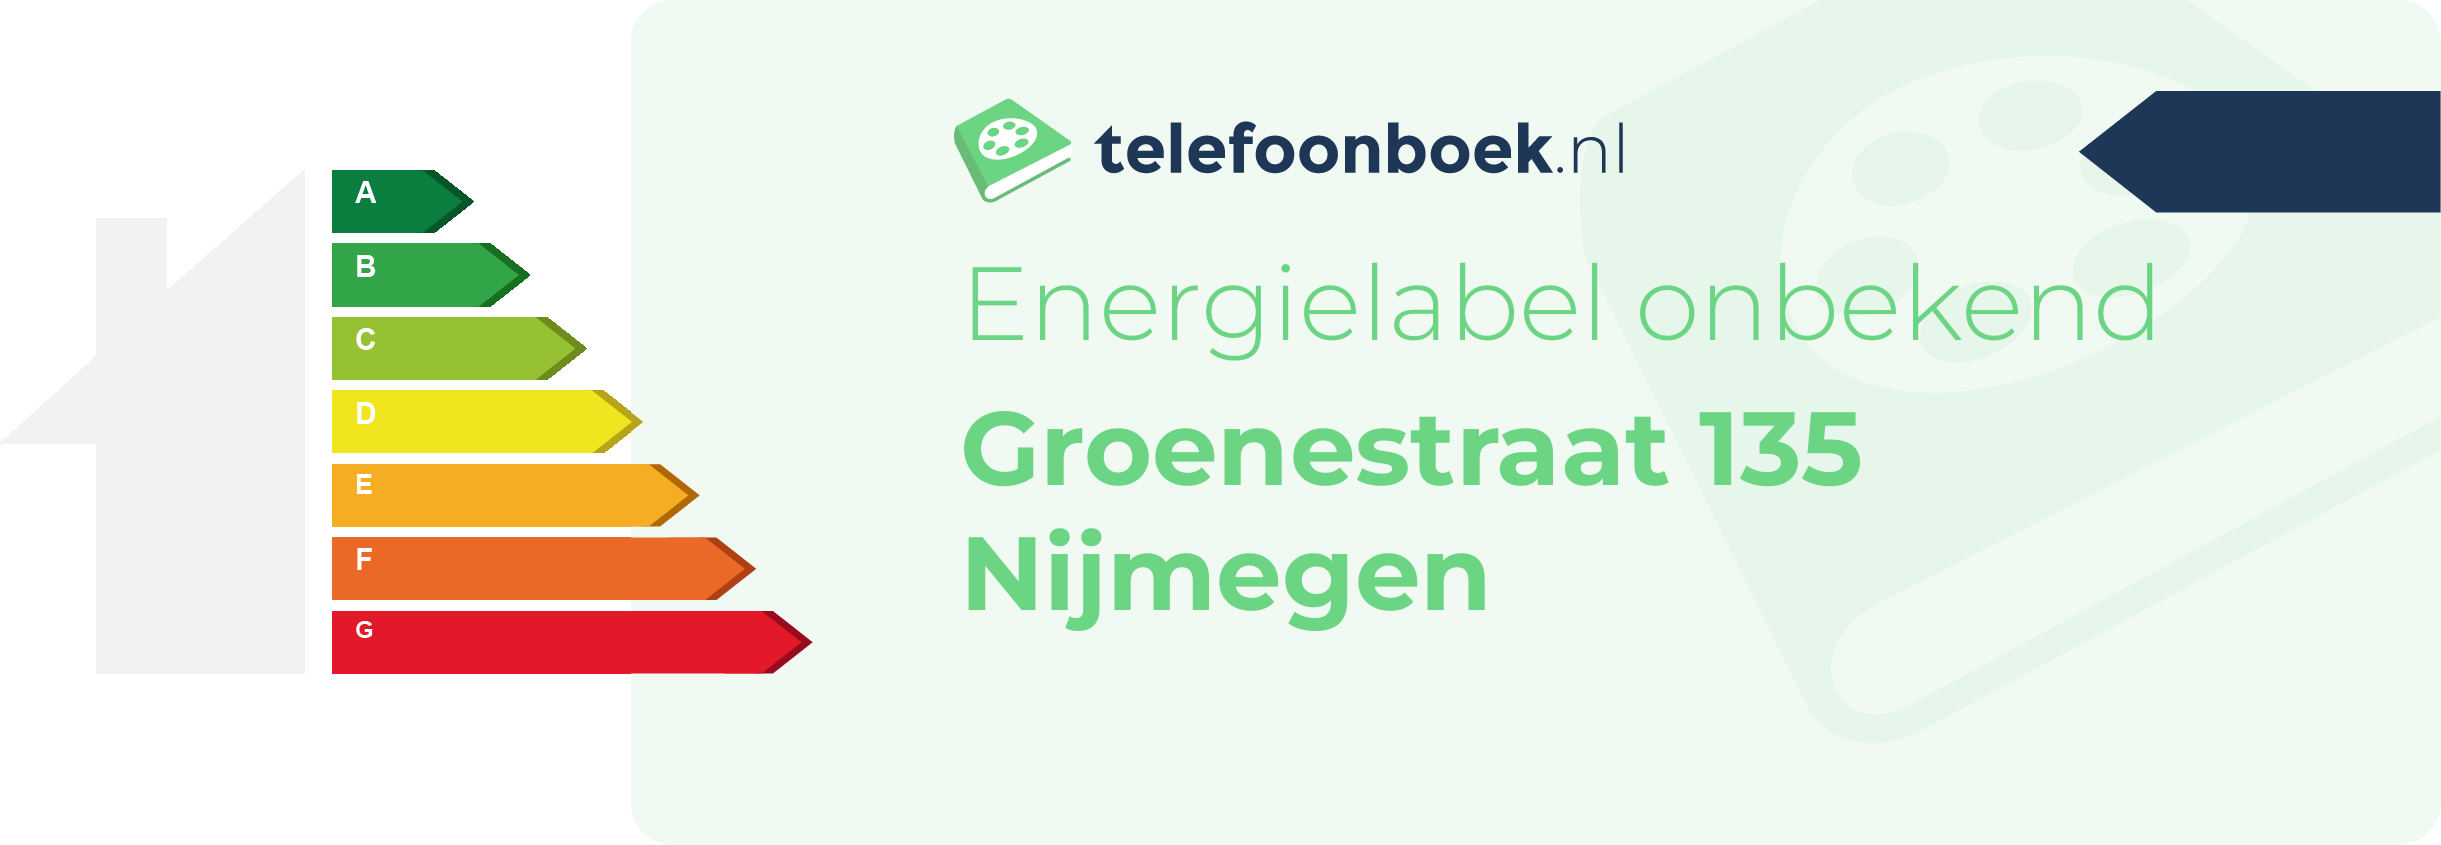 Energielabel Groenestraat 135 Nijmegen